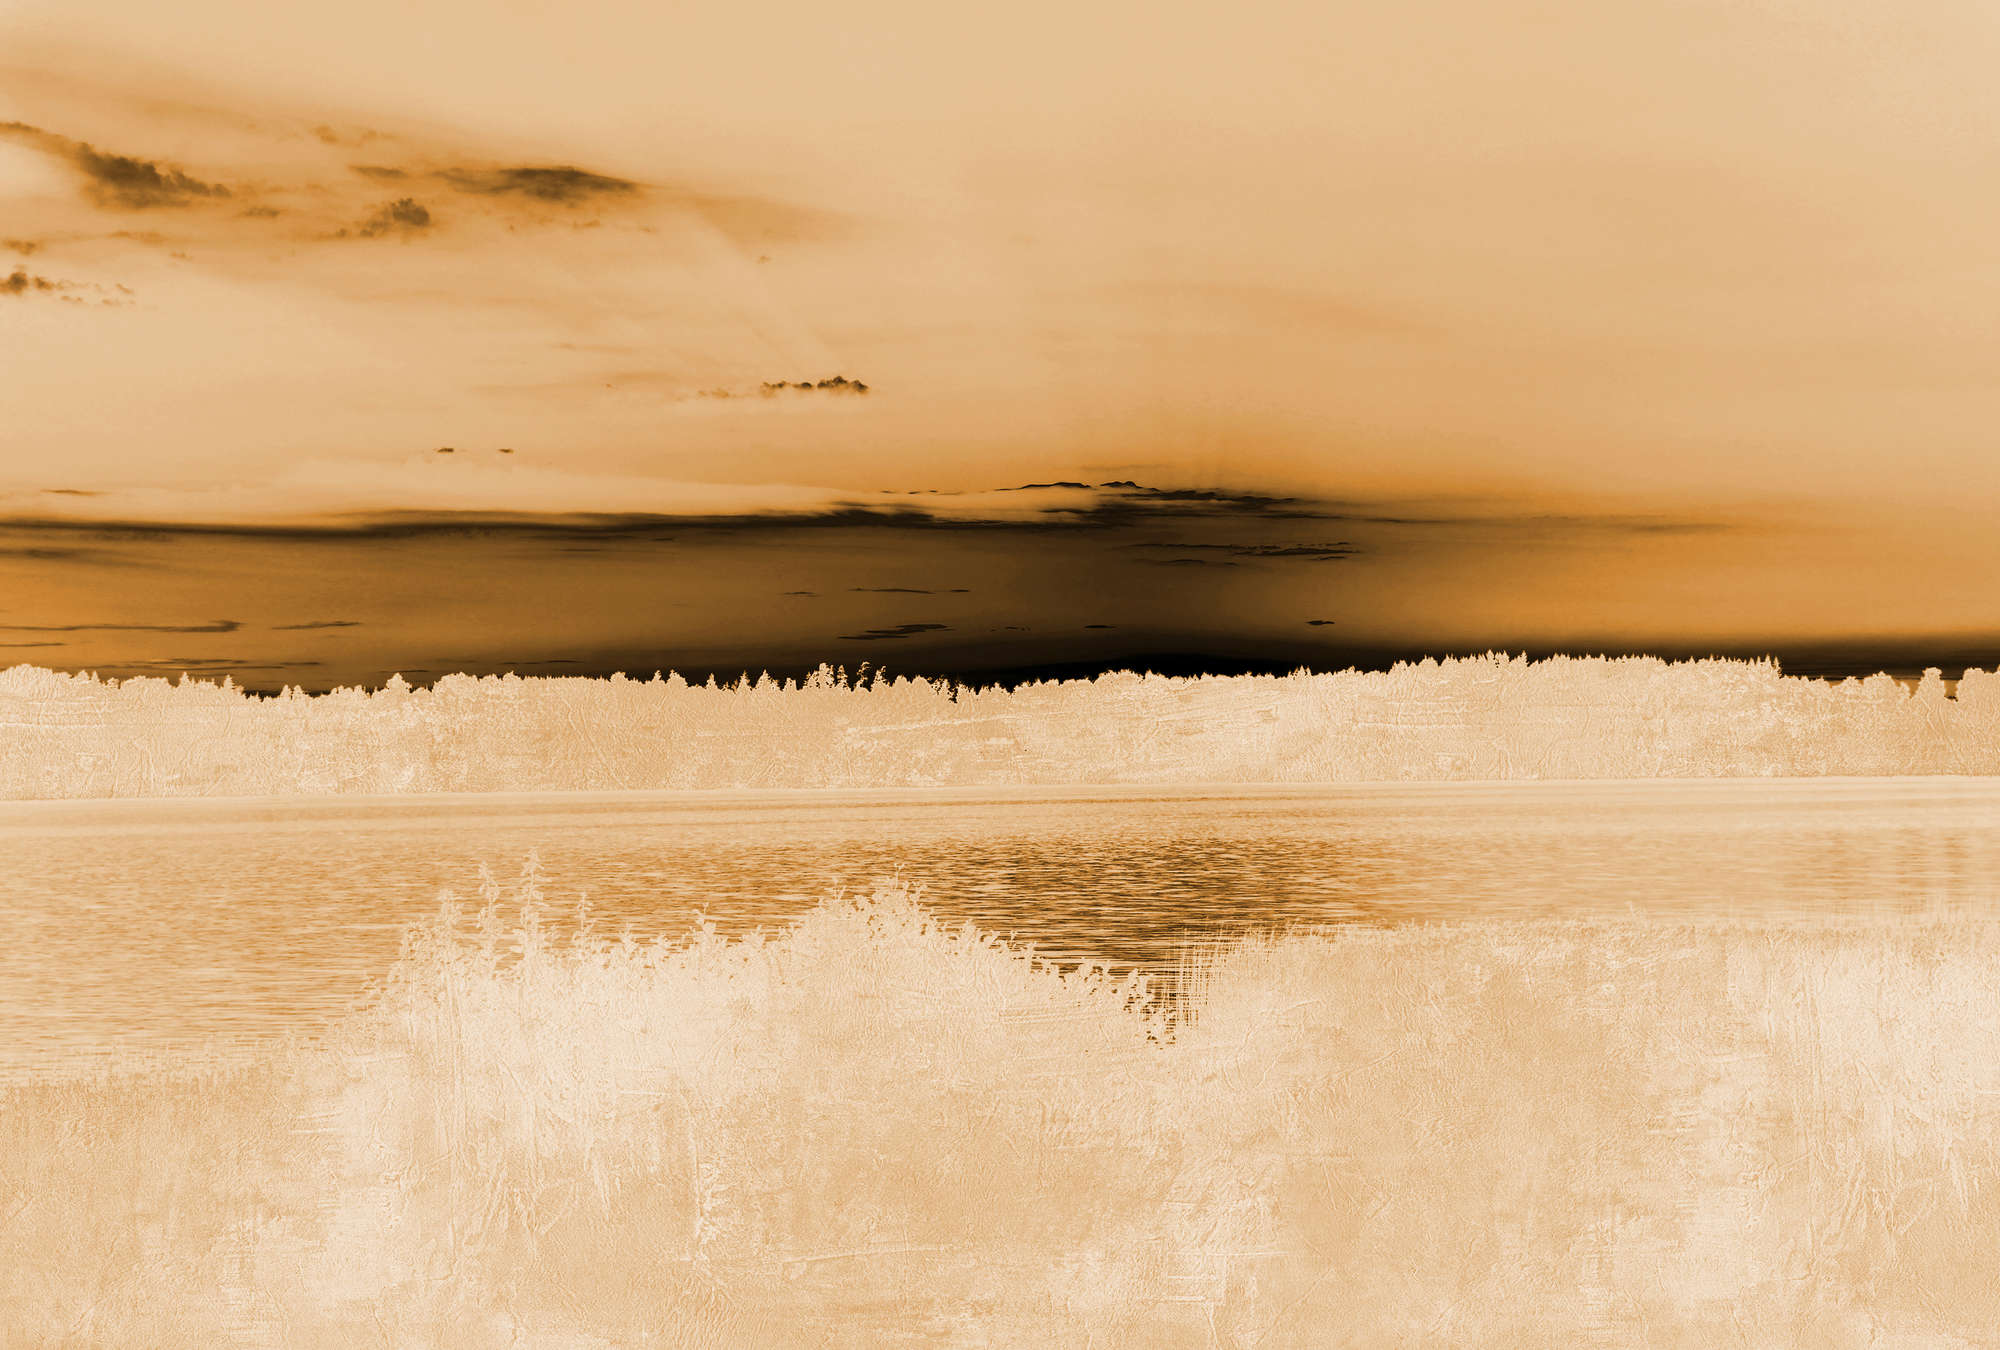             Papel Pintado Paisaje, Vista del Lago y Cielo Nublado - Naranja, Beige, Negro
        